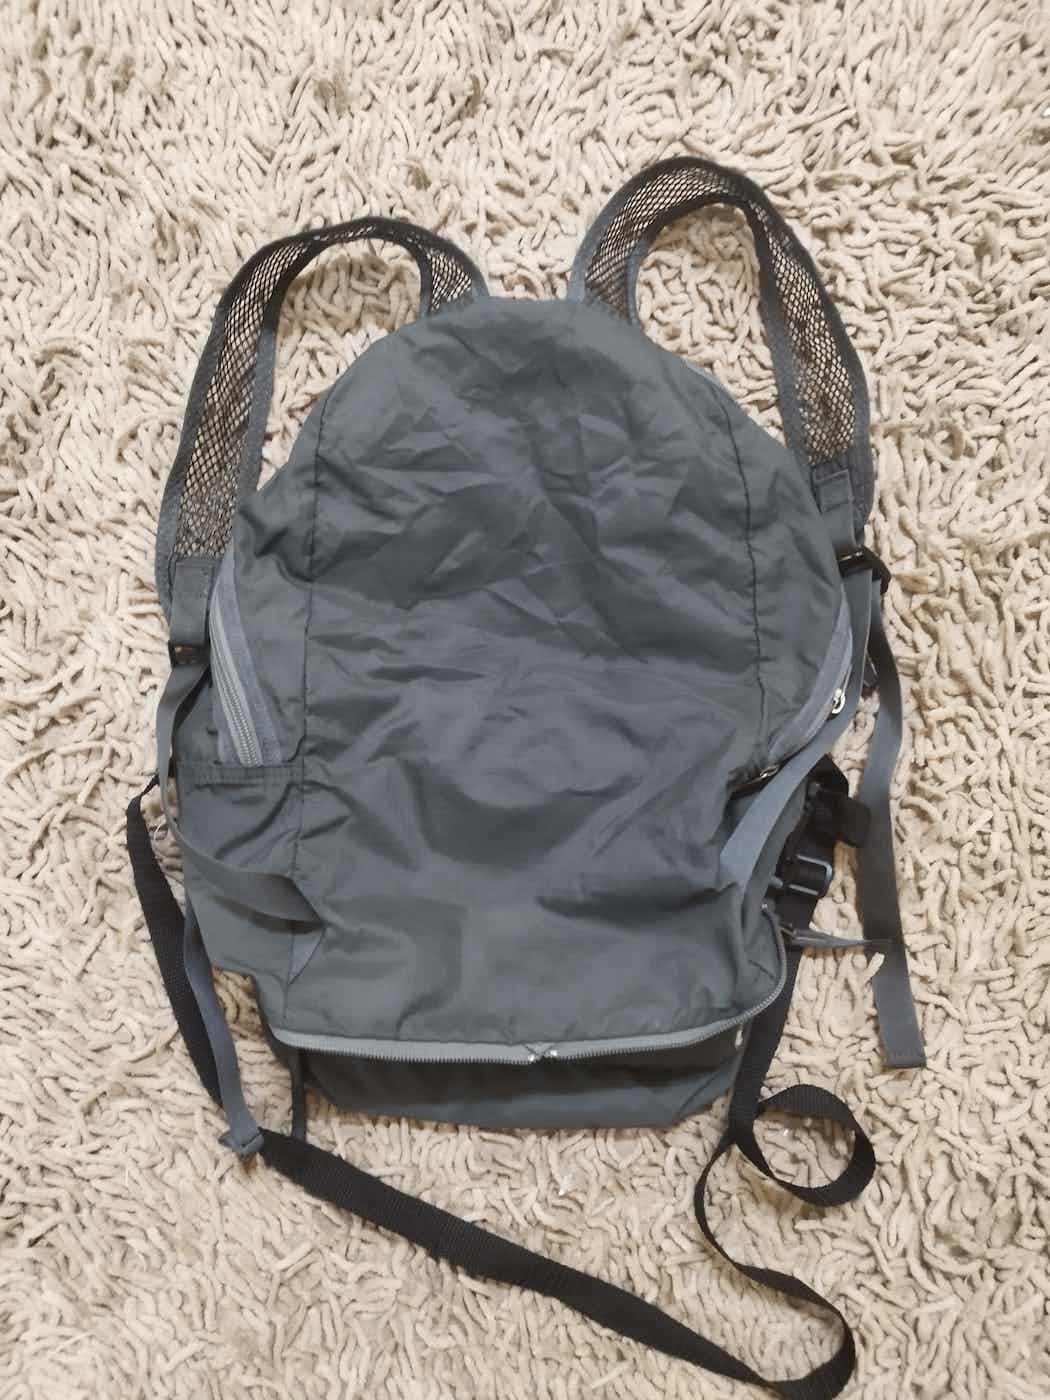 Porter 2 in 1 sling bag / backpack - 2